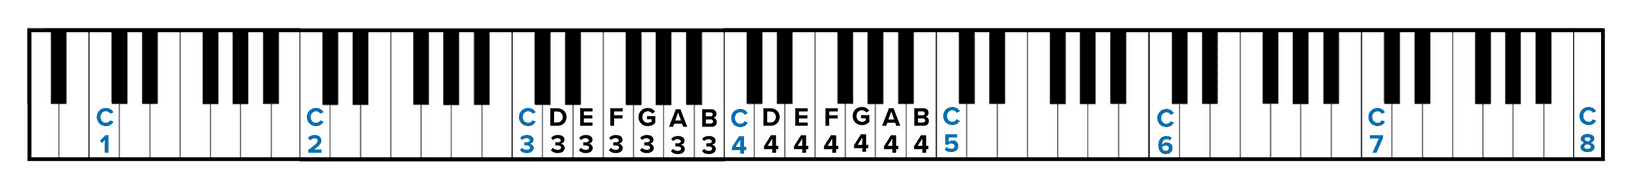 Ký hiệu các nốt nhạc trên đàn piano